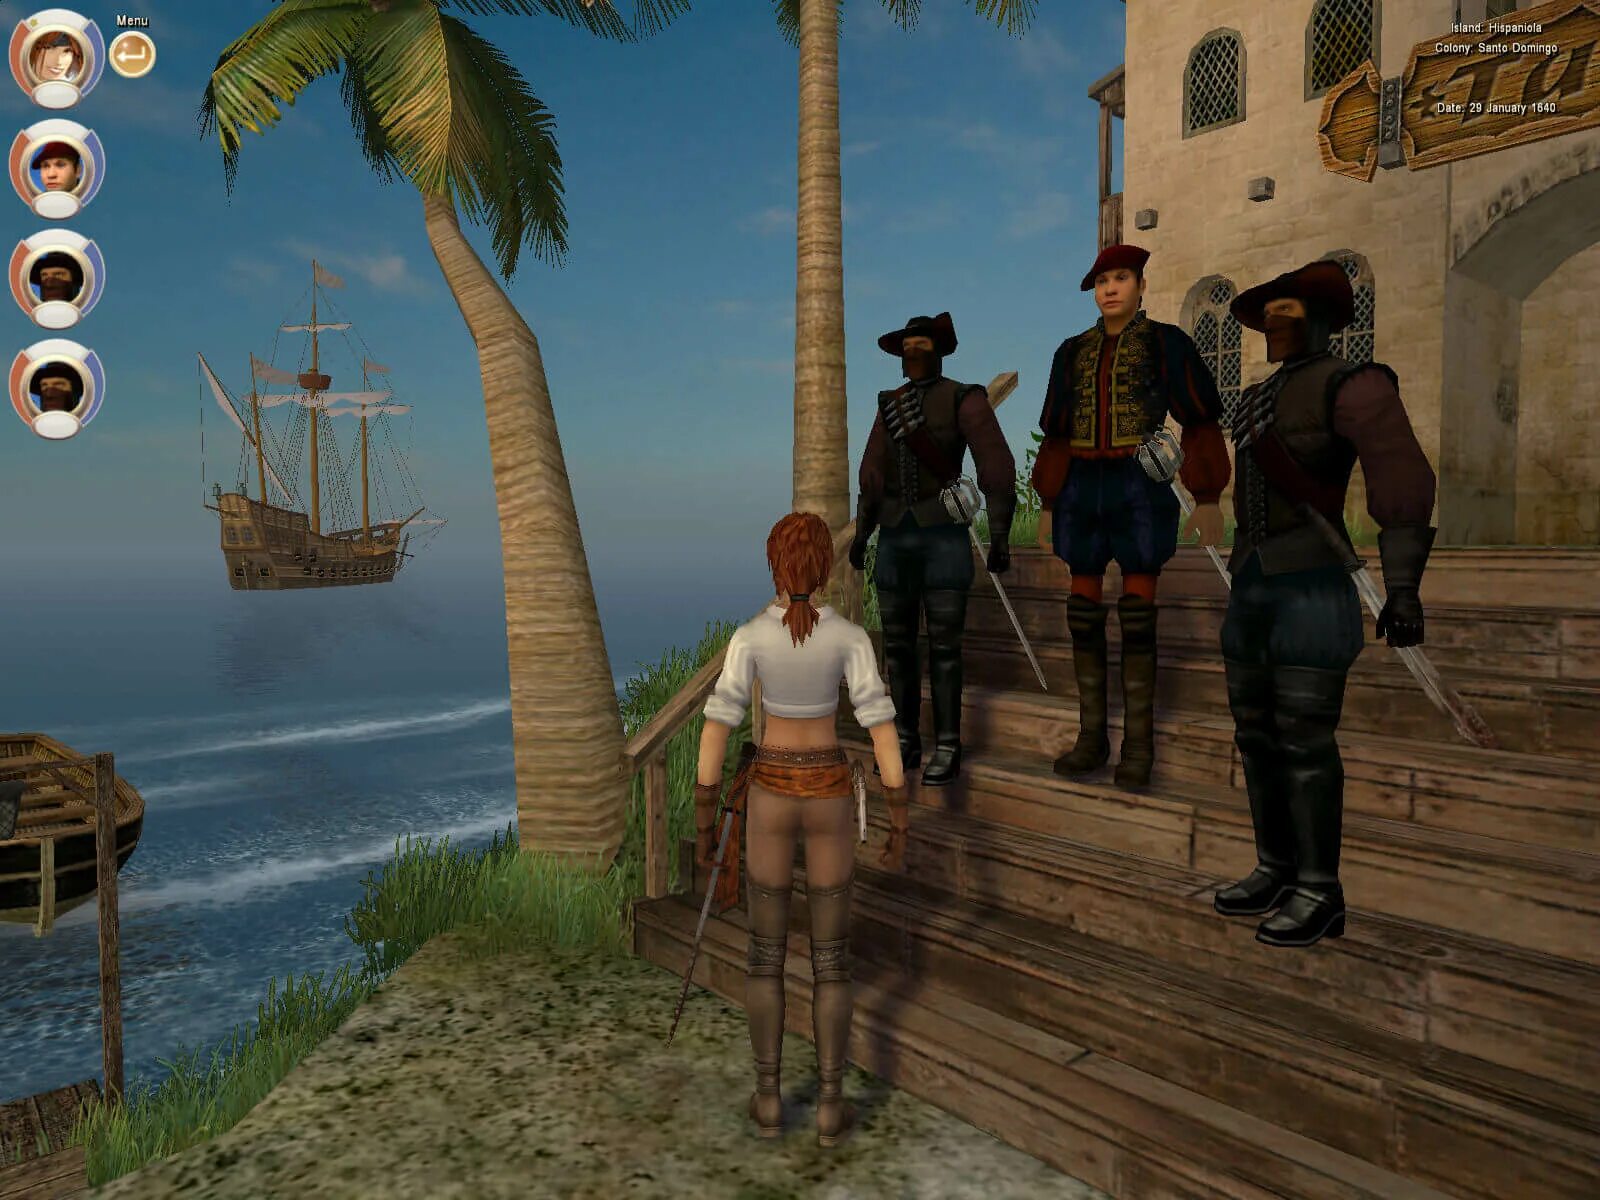 Корсары 3 пираты Карибского моря. Корсары III (2005). Age of Pirates: Caribbean Tales игра. Натаниэль Хаук Корсары 2. Как играть в игру пираты